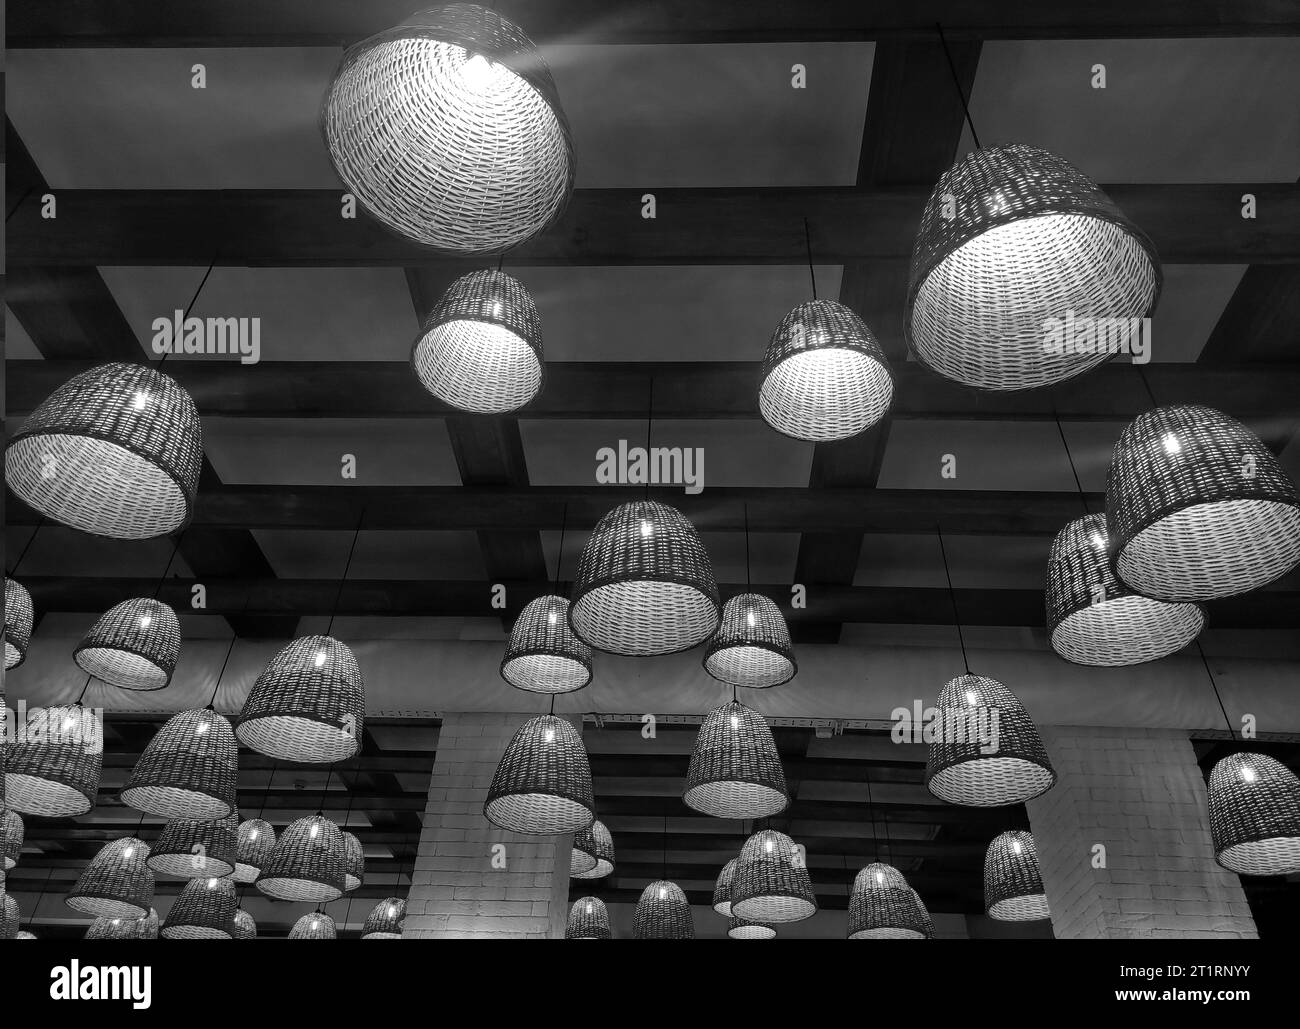 Lampade elettriche bianche e nere e soffitto in legno. Carta da parati monocromatica per caffè Foto Stock